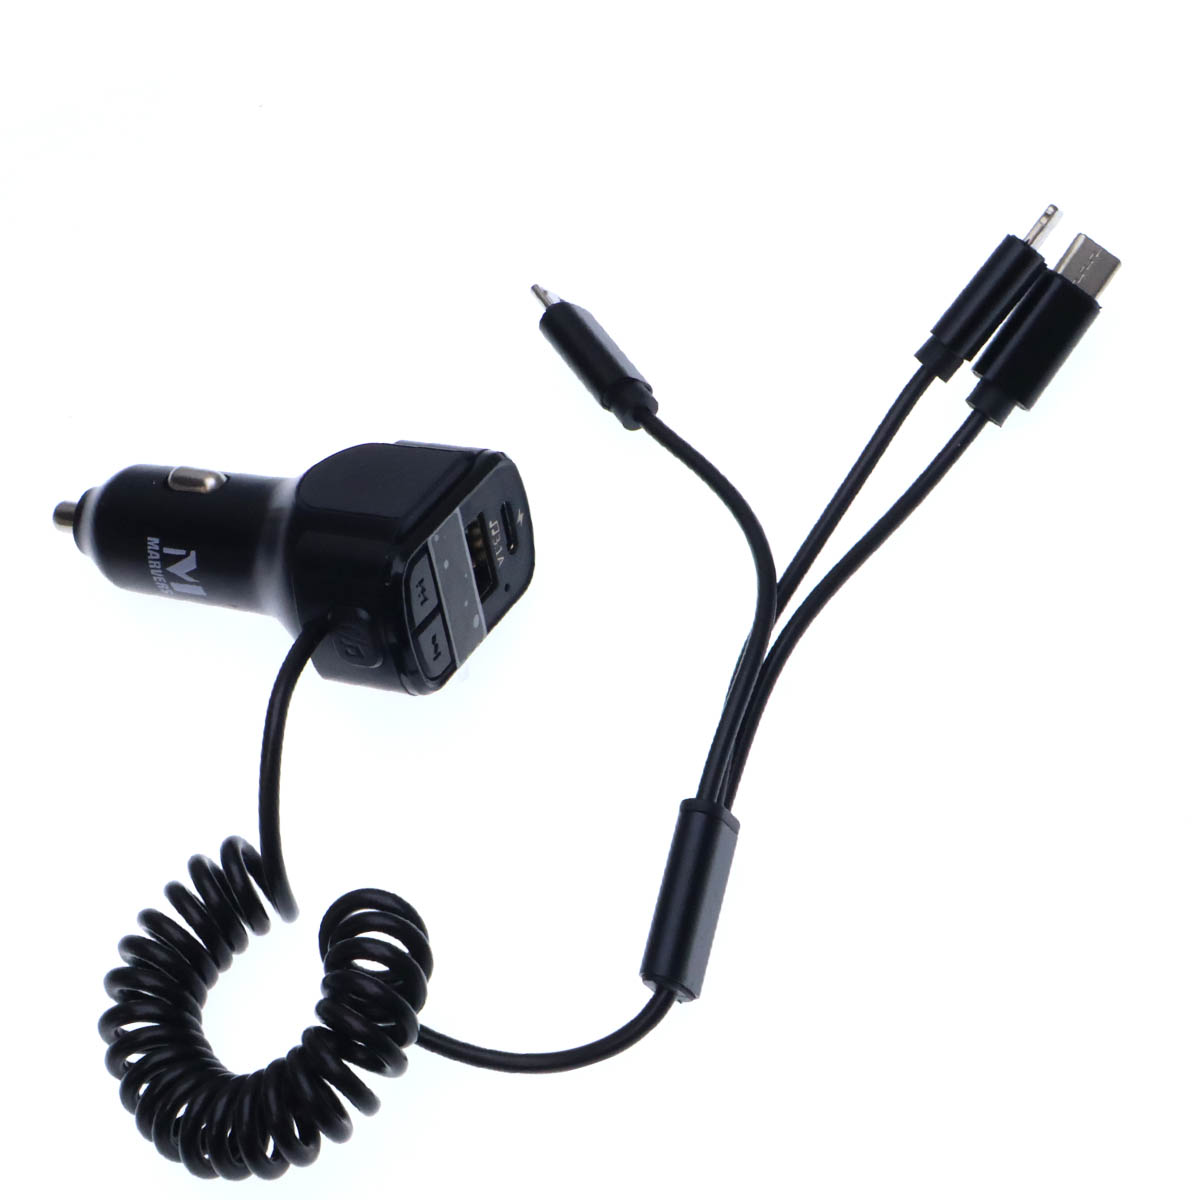 АЗУ (Автомобильное зарядное устройство) MARVERS MS-C32 с USB, Type C выходами, кабель Apple 8 pin, Micro USB, Type-C, FM Transmitter, цвет черный